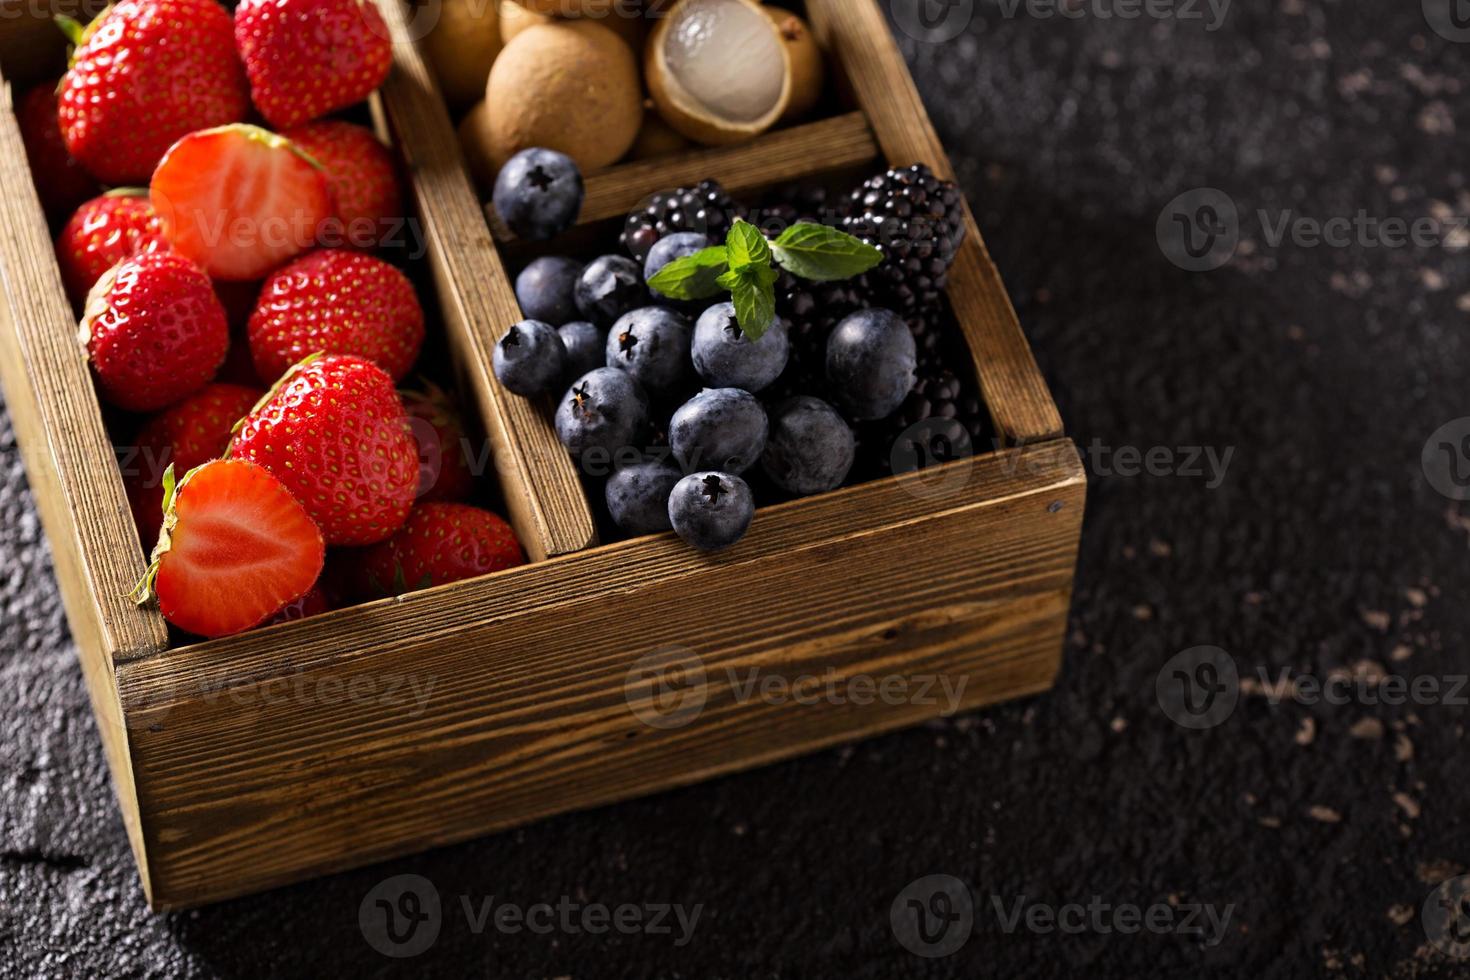 fruits frais dans une boîte en bois photo